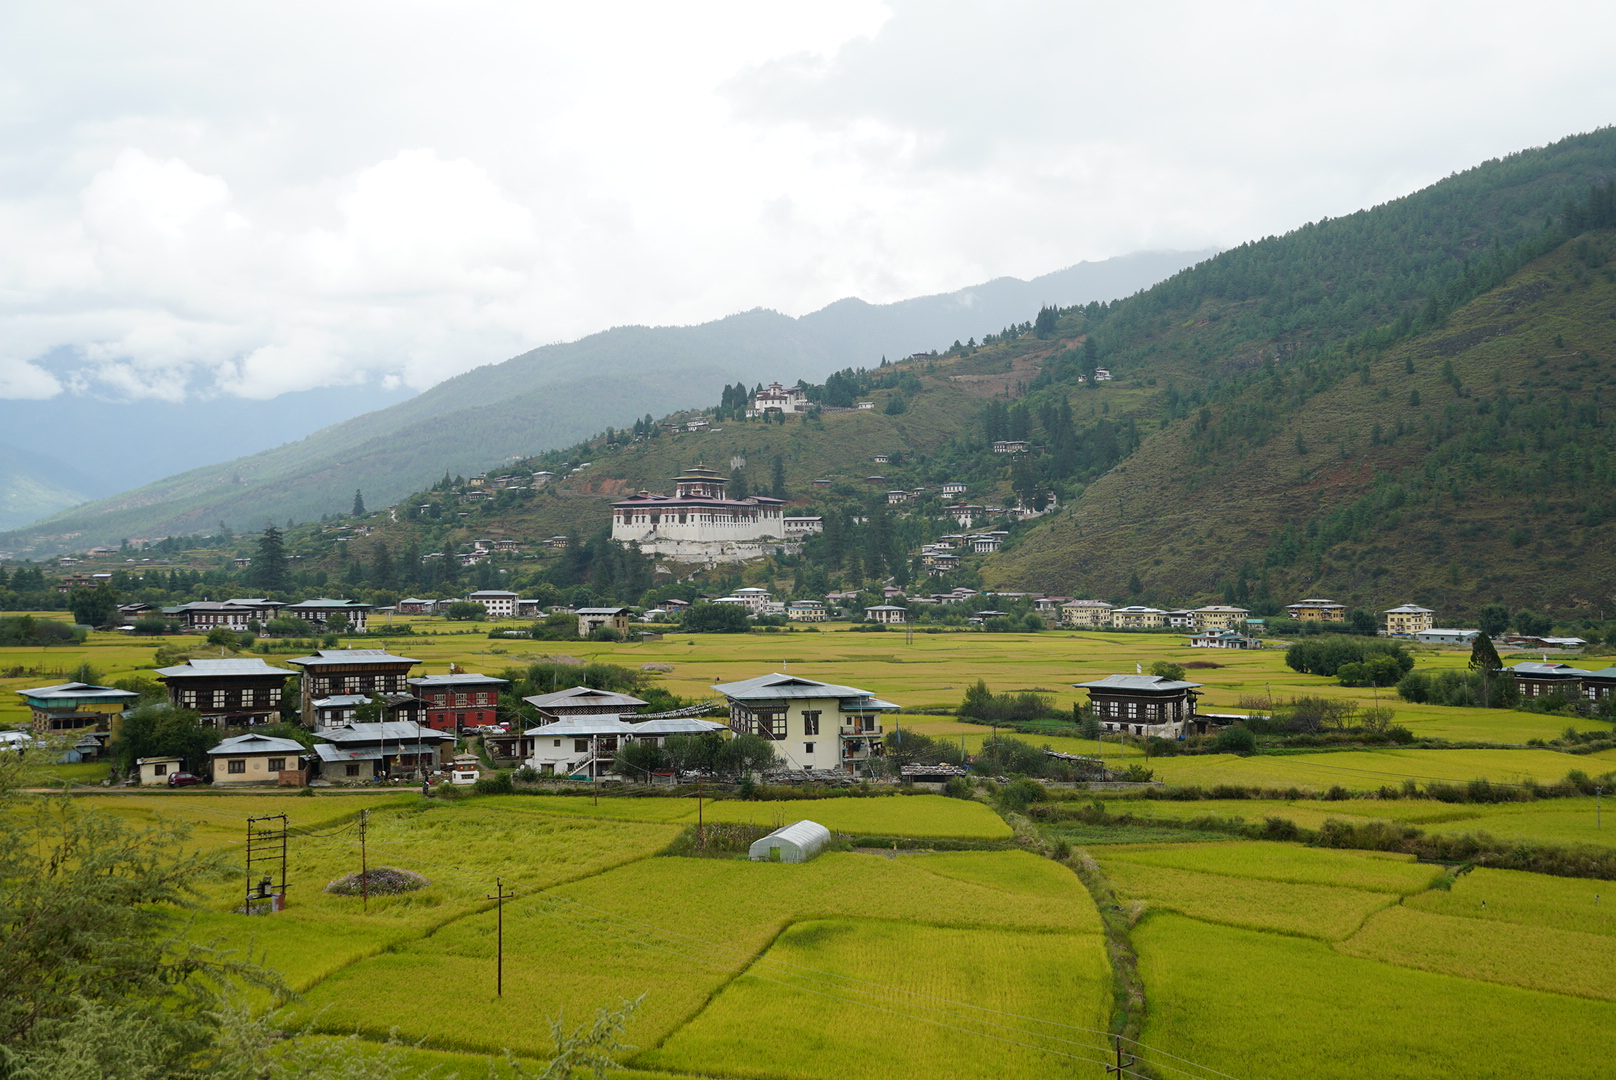 Paro Bhutan